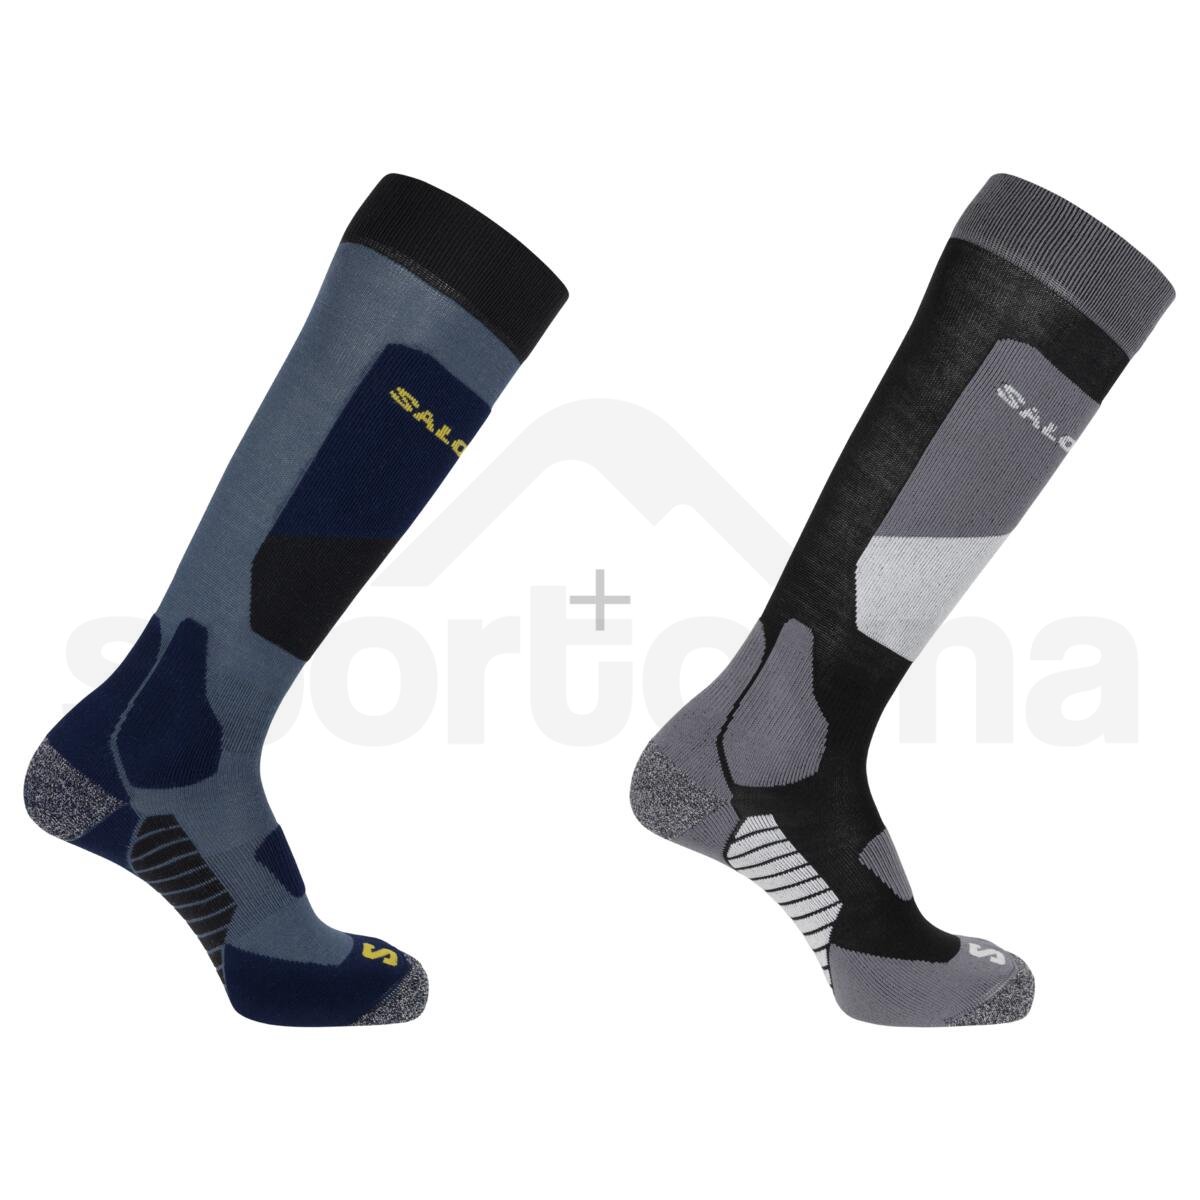 Ponožky Salomon S/Access 2-Pack - černá/modrá